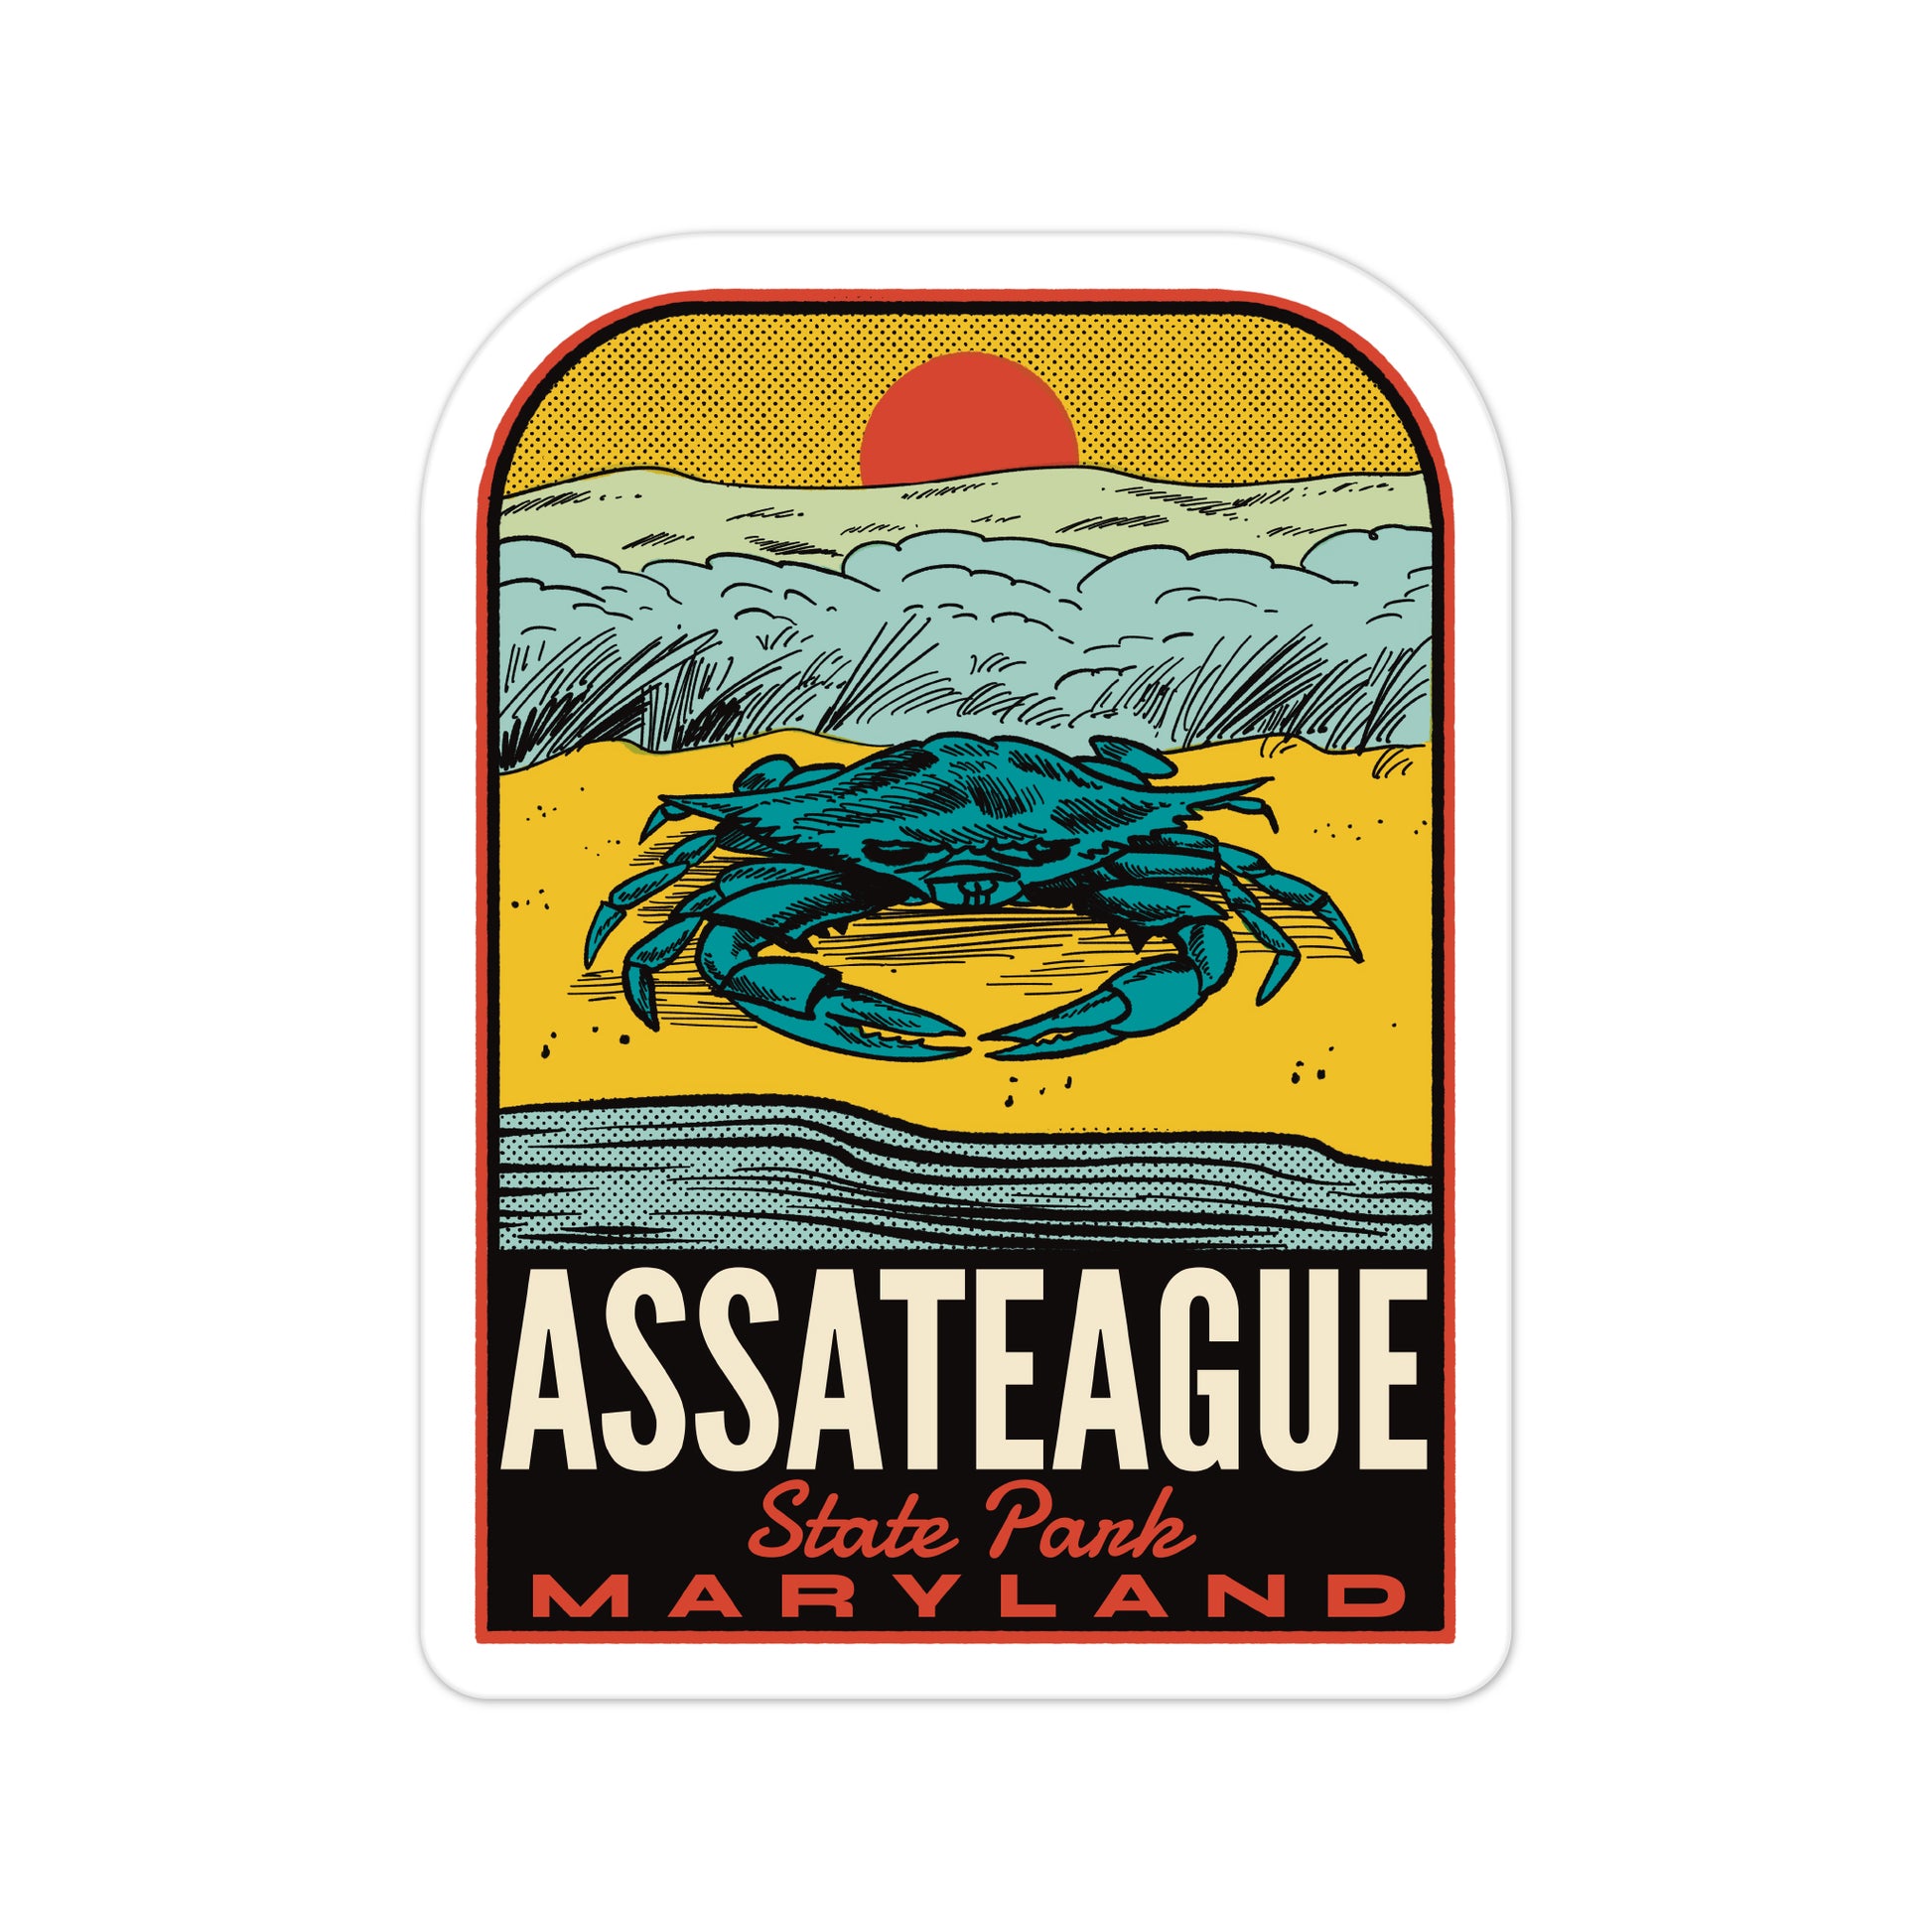 A sticker of Assateague State Park